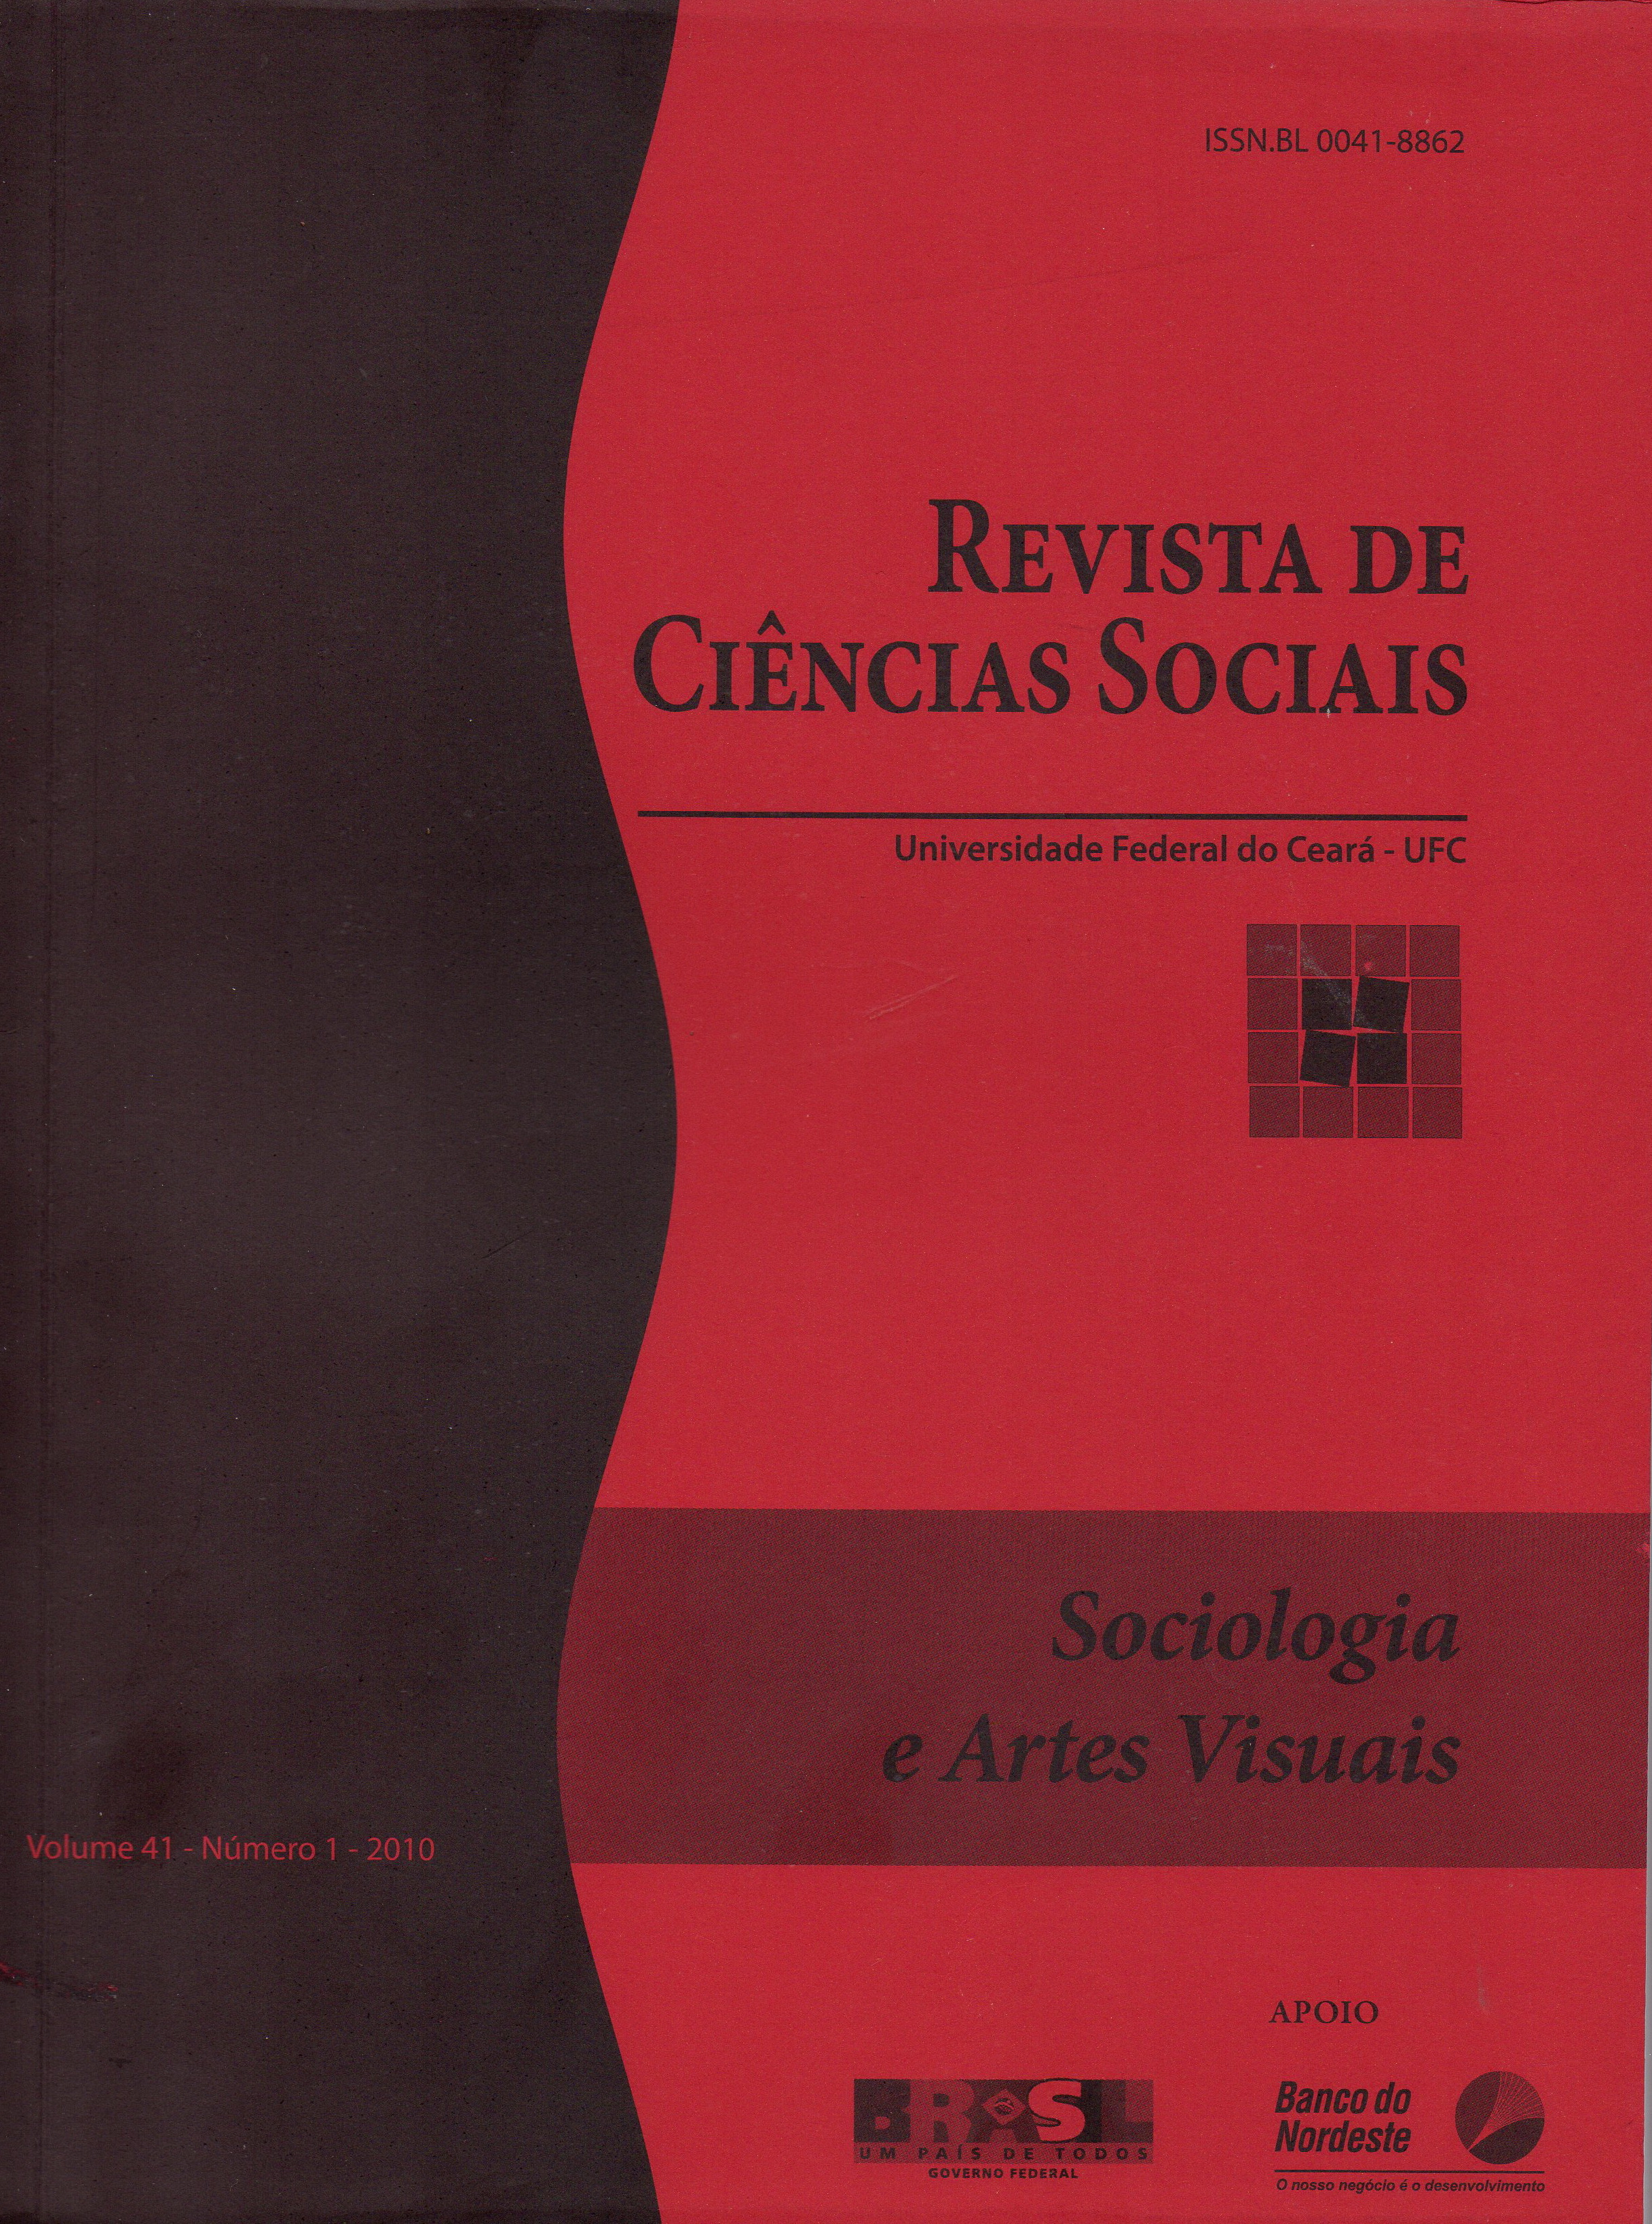 					Ver Vol. 41 Núm. 1 (2010): Dossiê: Sociologia e Artes Visuais
				